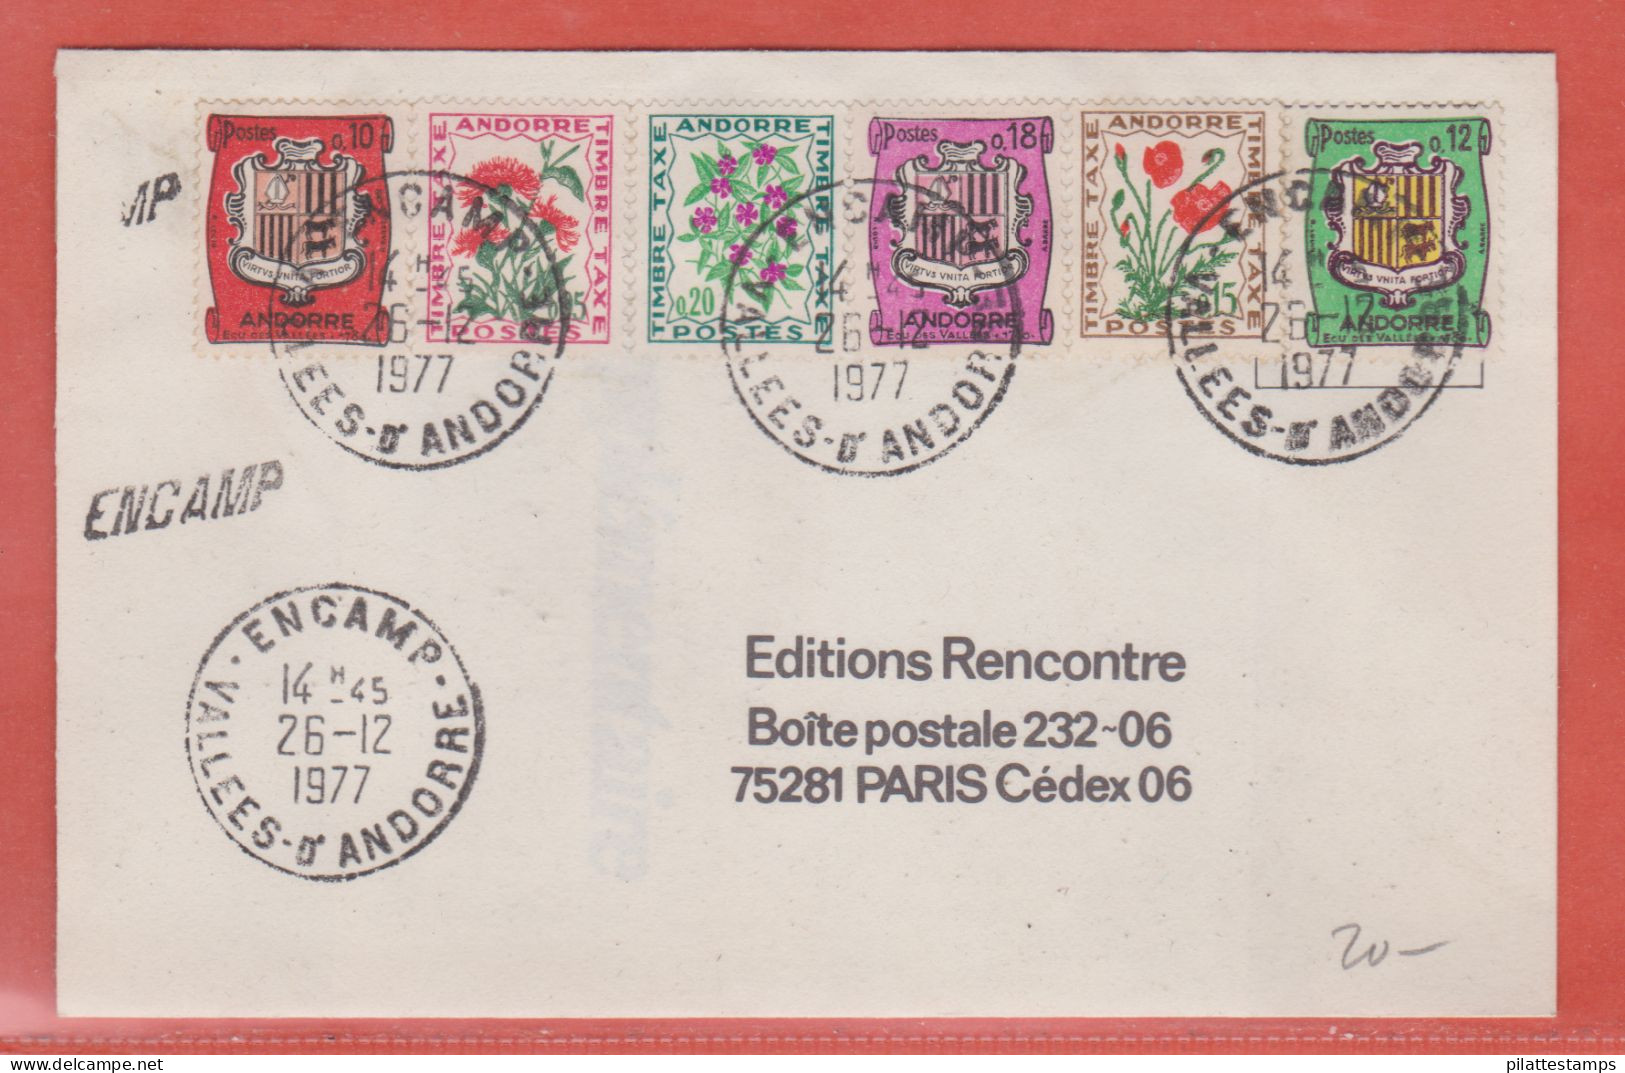 ANDORRE LETTRE DE 1977 DE ENCAMP POUR PARIS FRANCE - Covers & Documents